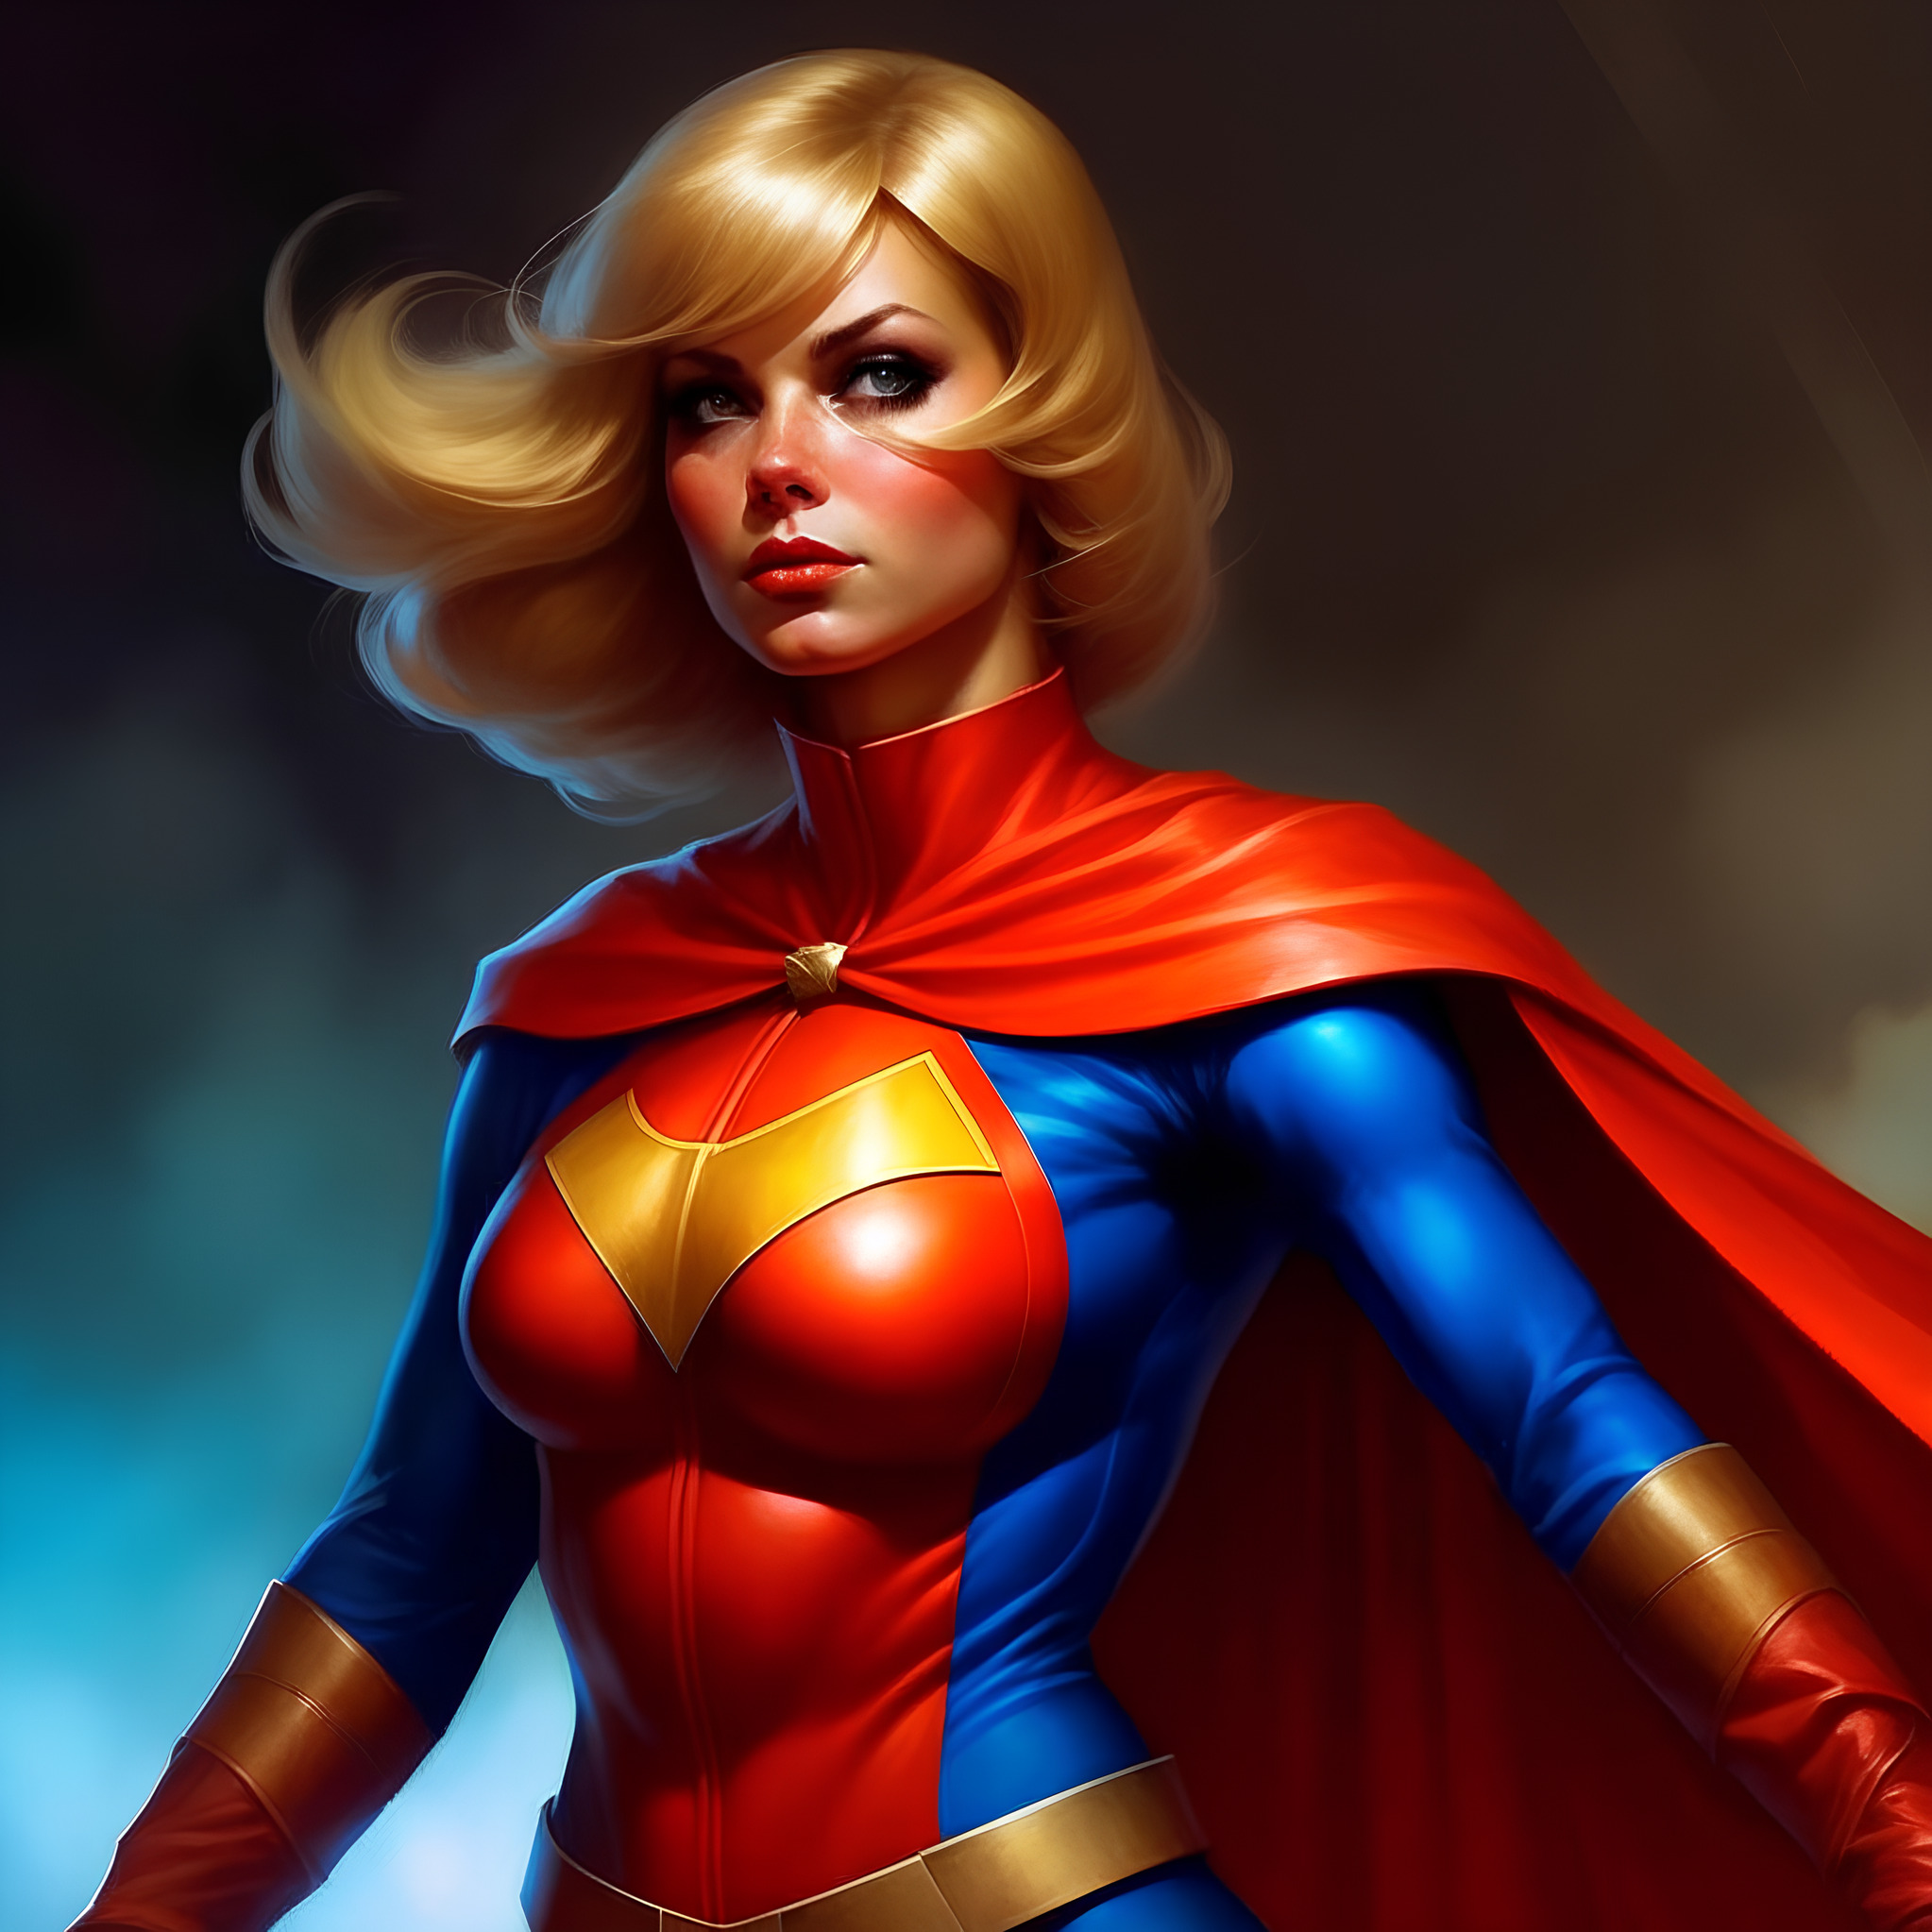 Super heroine